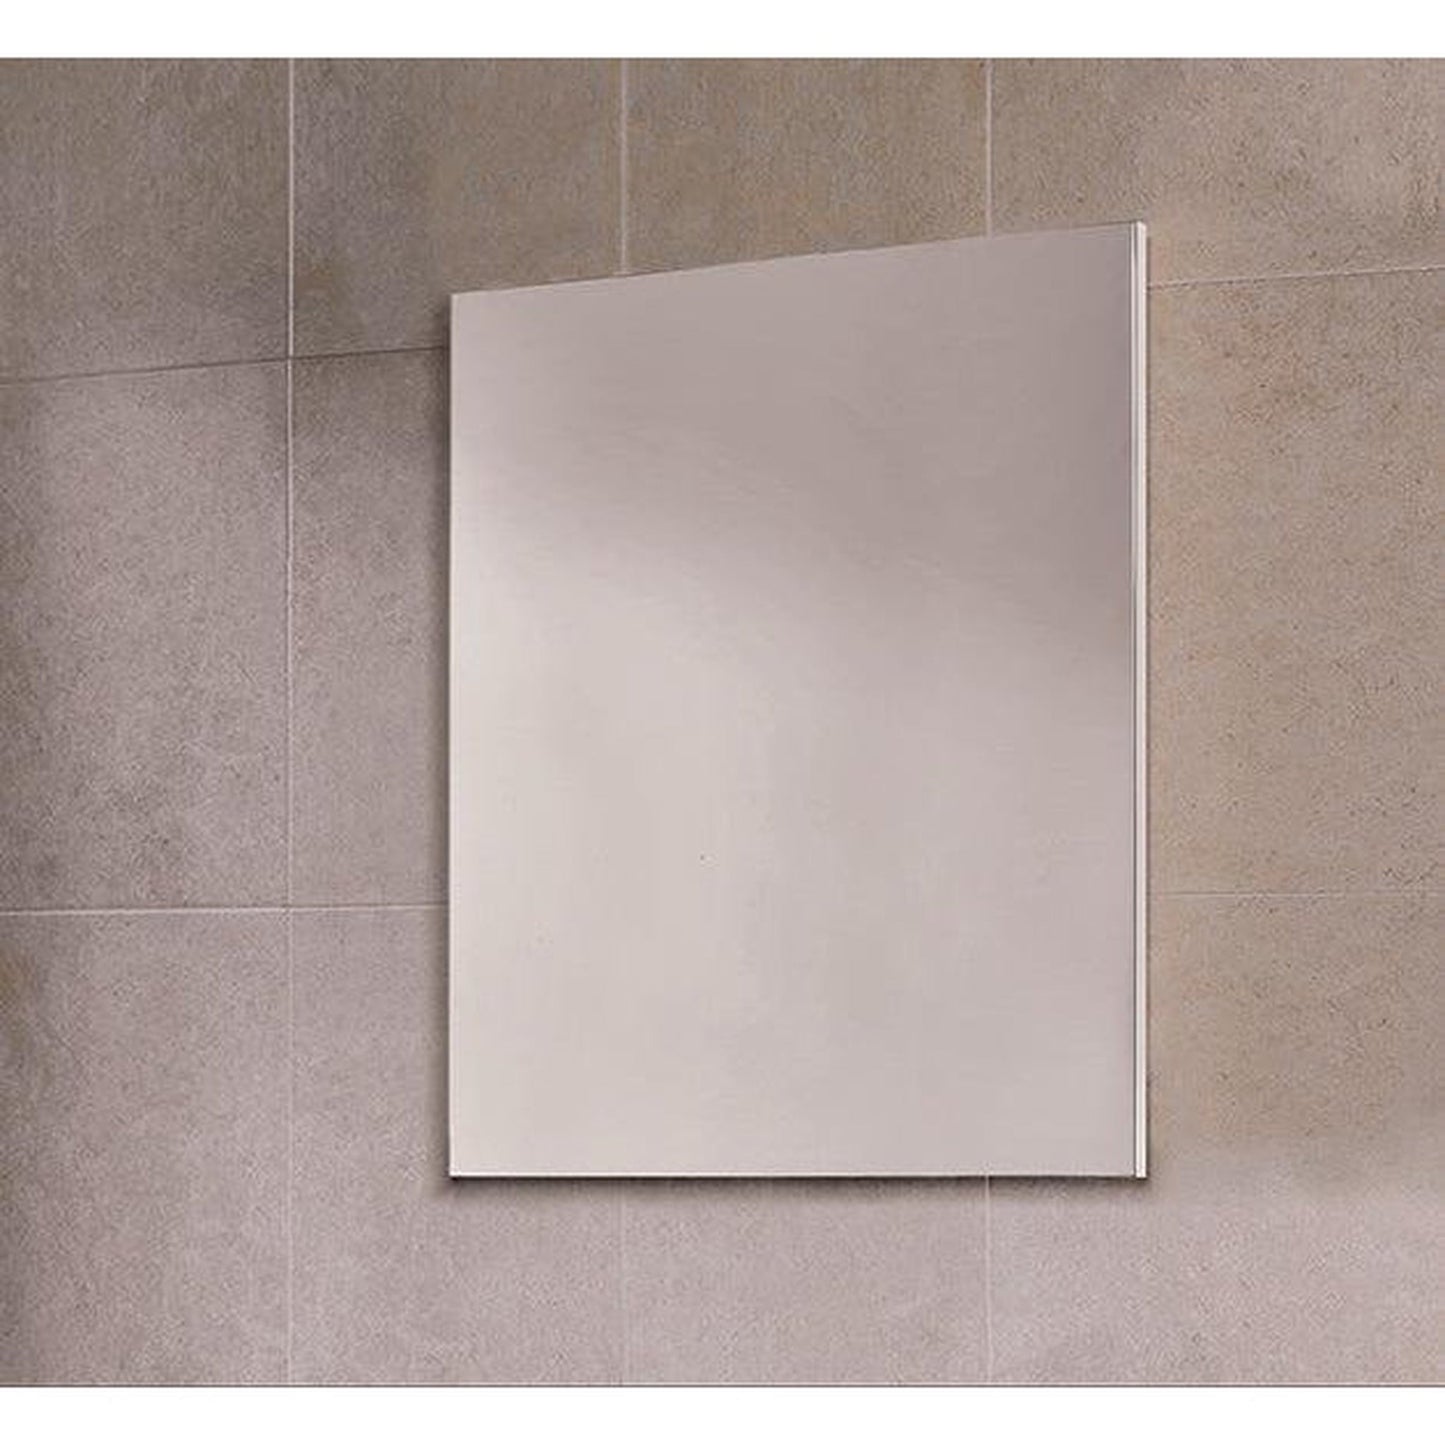 Royo Murano 28" x 28" Square Vanity Mirror